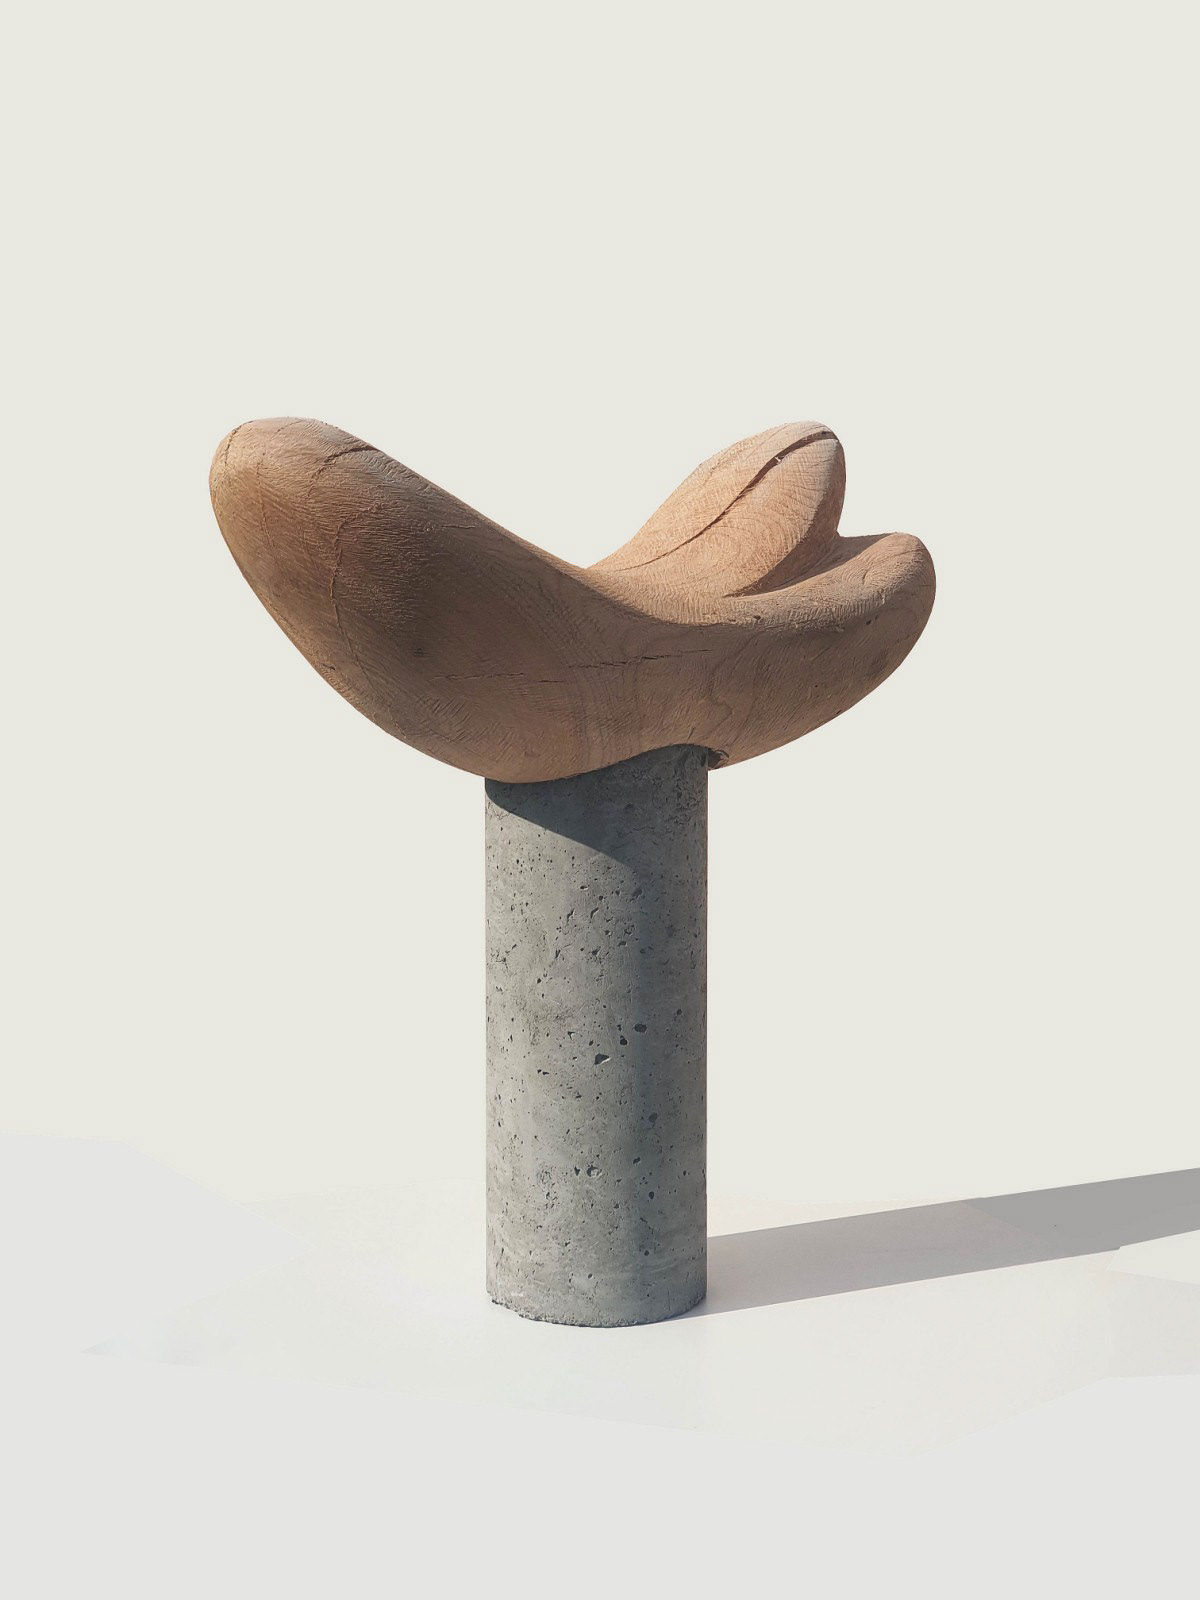 sculpture contemporaryart wood sculpturecontemporary voncrete